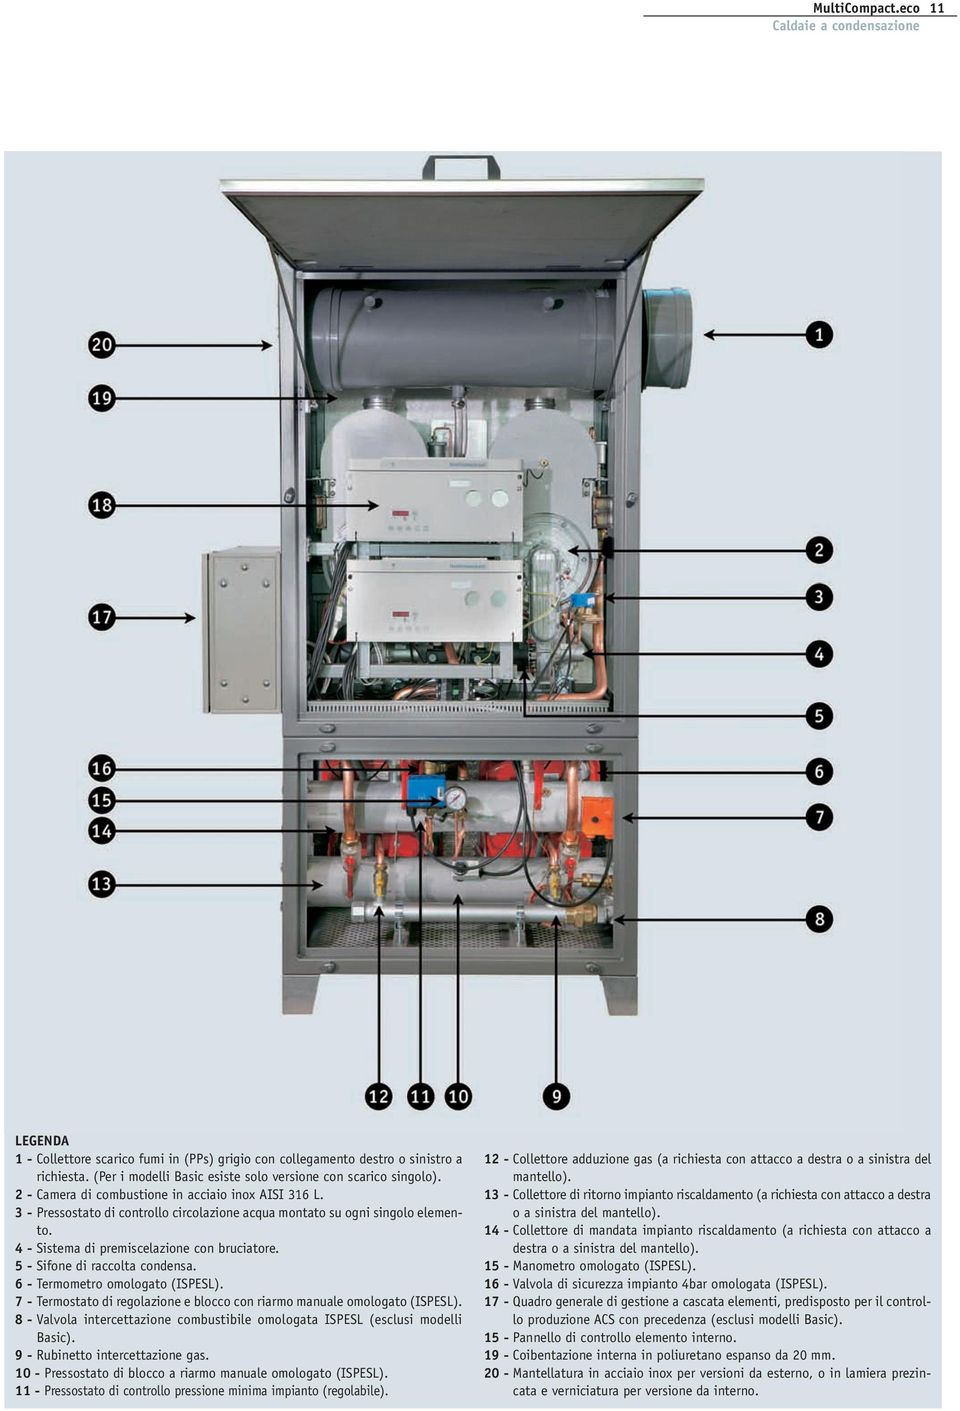 5 - Sifone di raccolta condensa. 6 - Termometro omologato (ISPESL). 7 - Termostato di regolazione e blocco con riarmo manuale omologato (ISPESL).